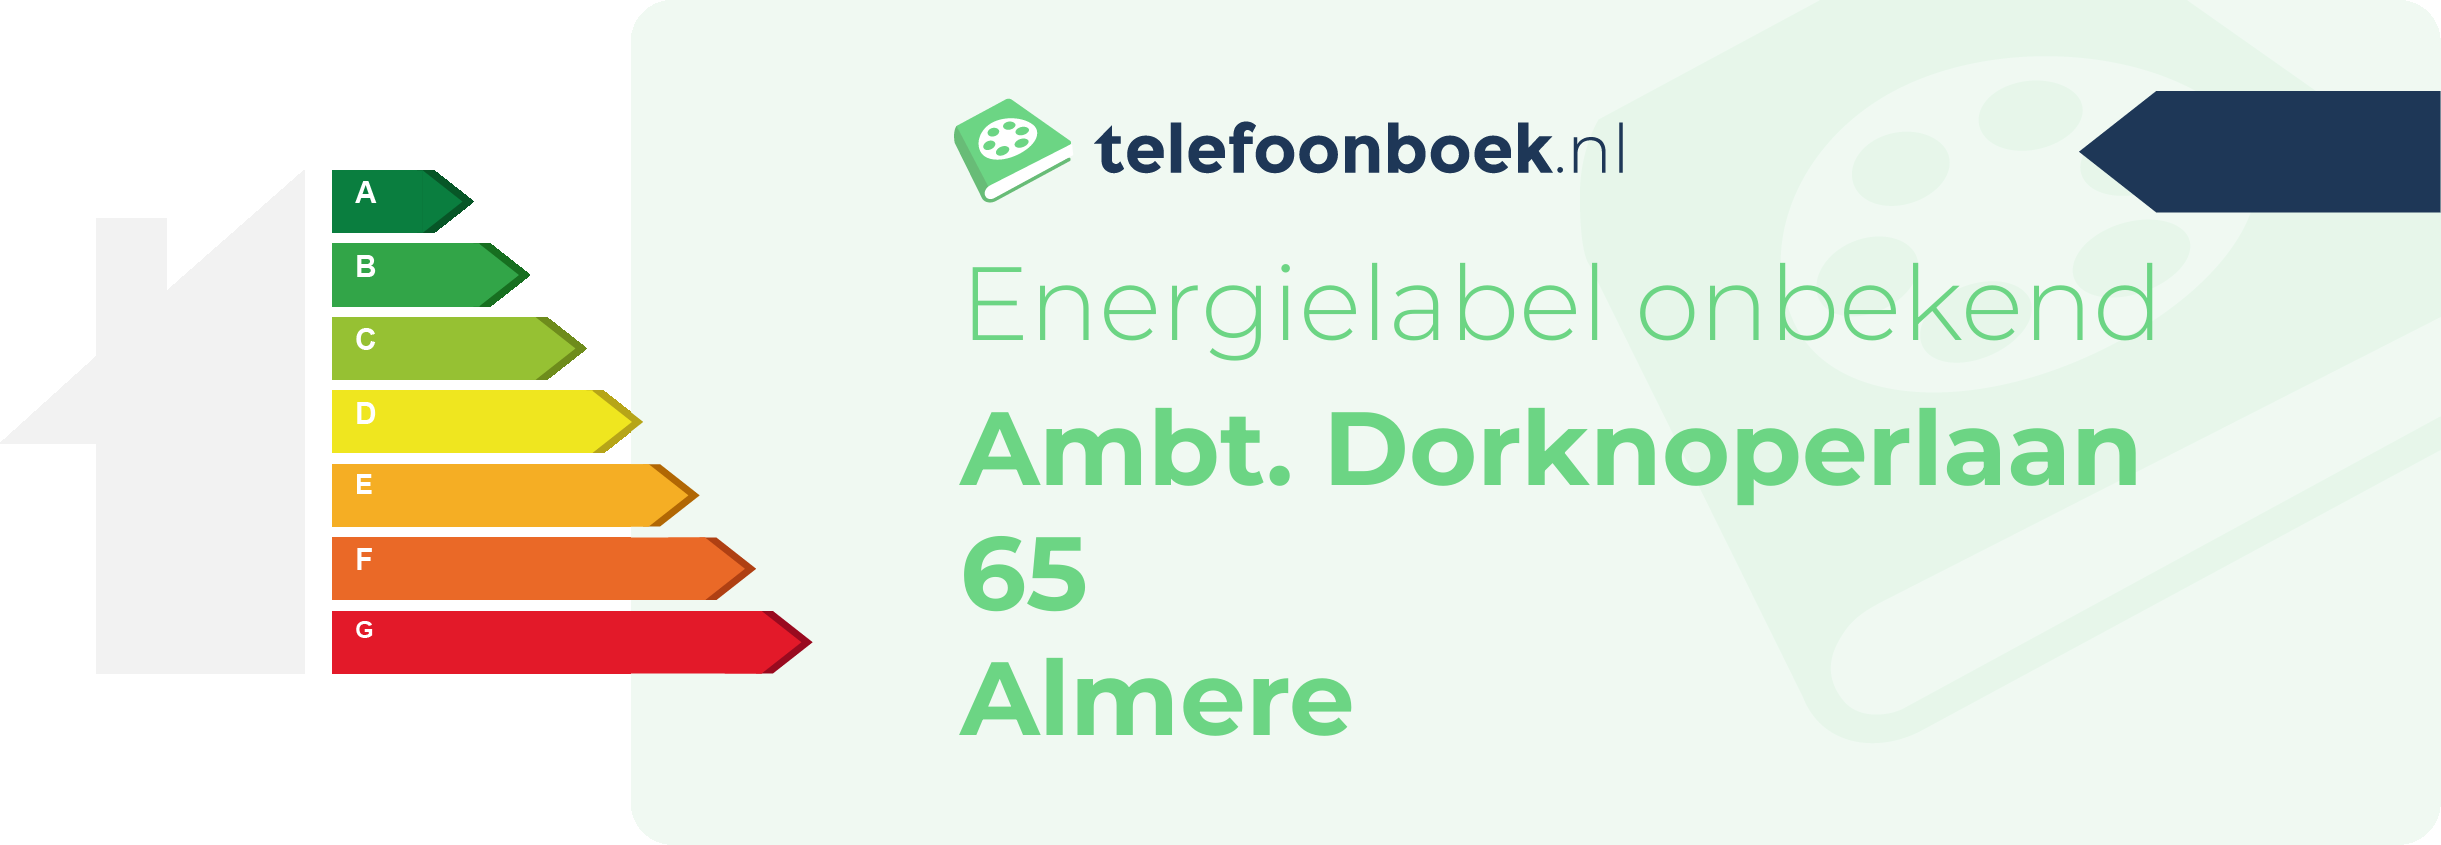 Energielabel Ambt. Dorknoperlaan 65 Almere